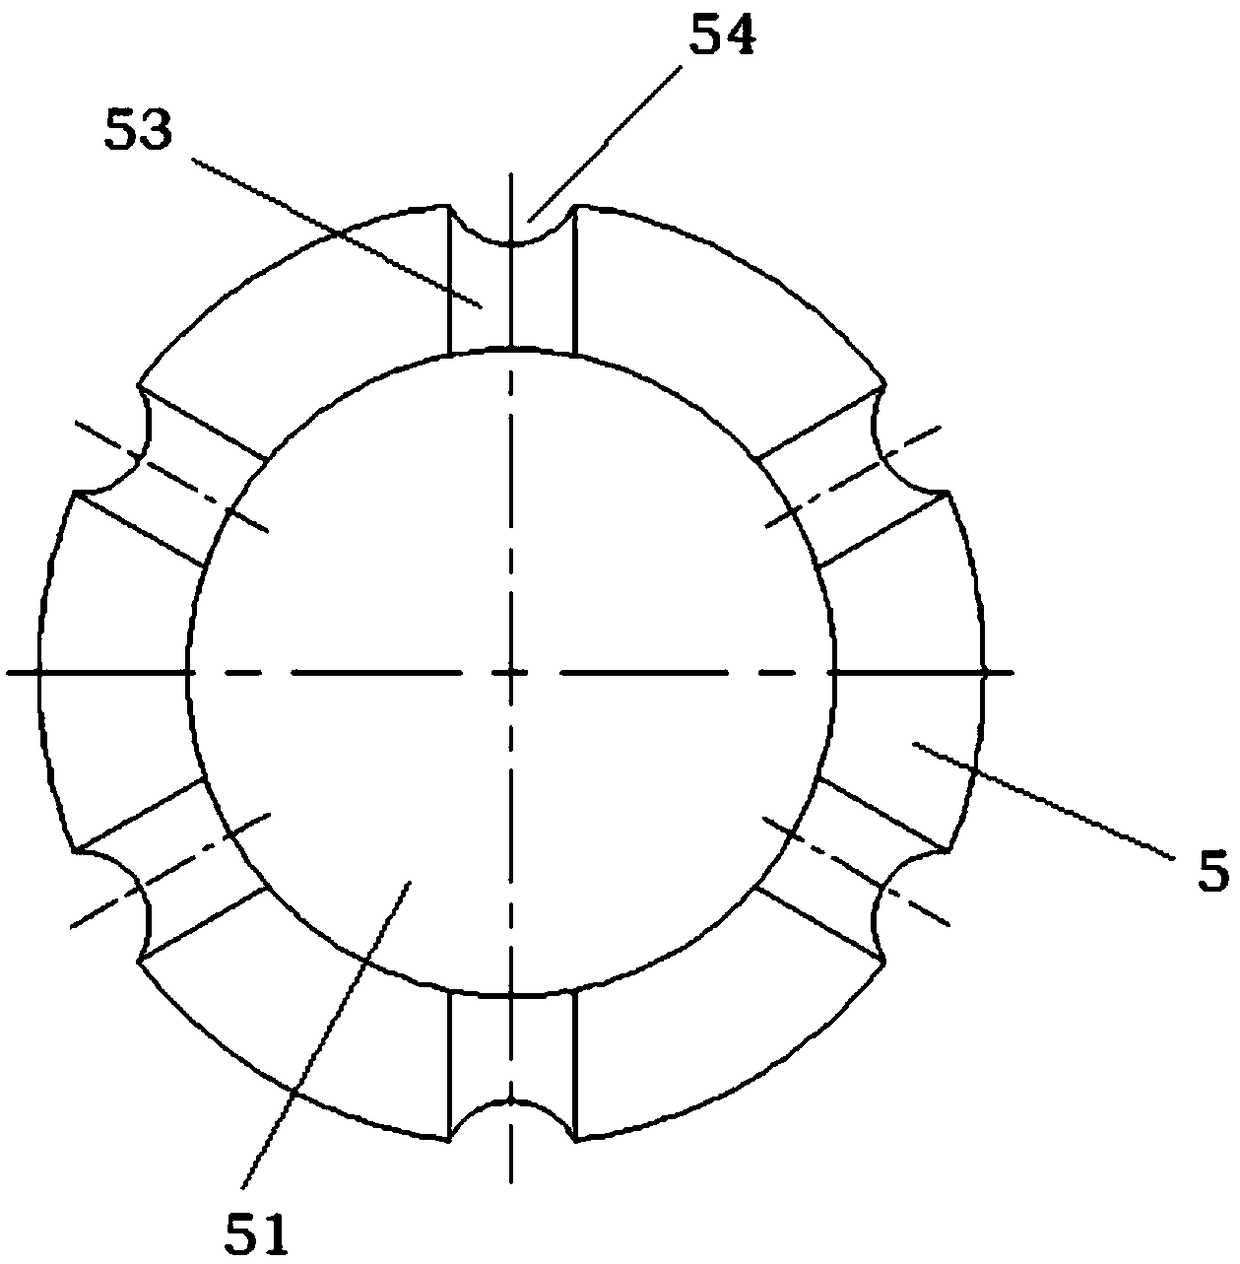 Metal sealing valve seat and wear-resisting ball valve